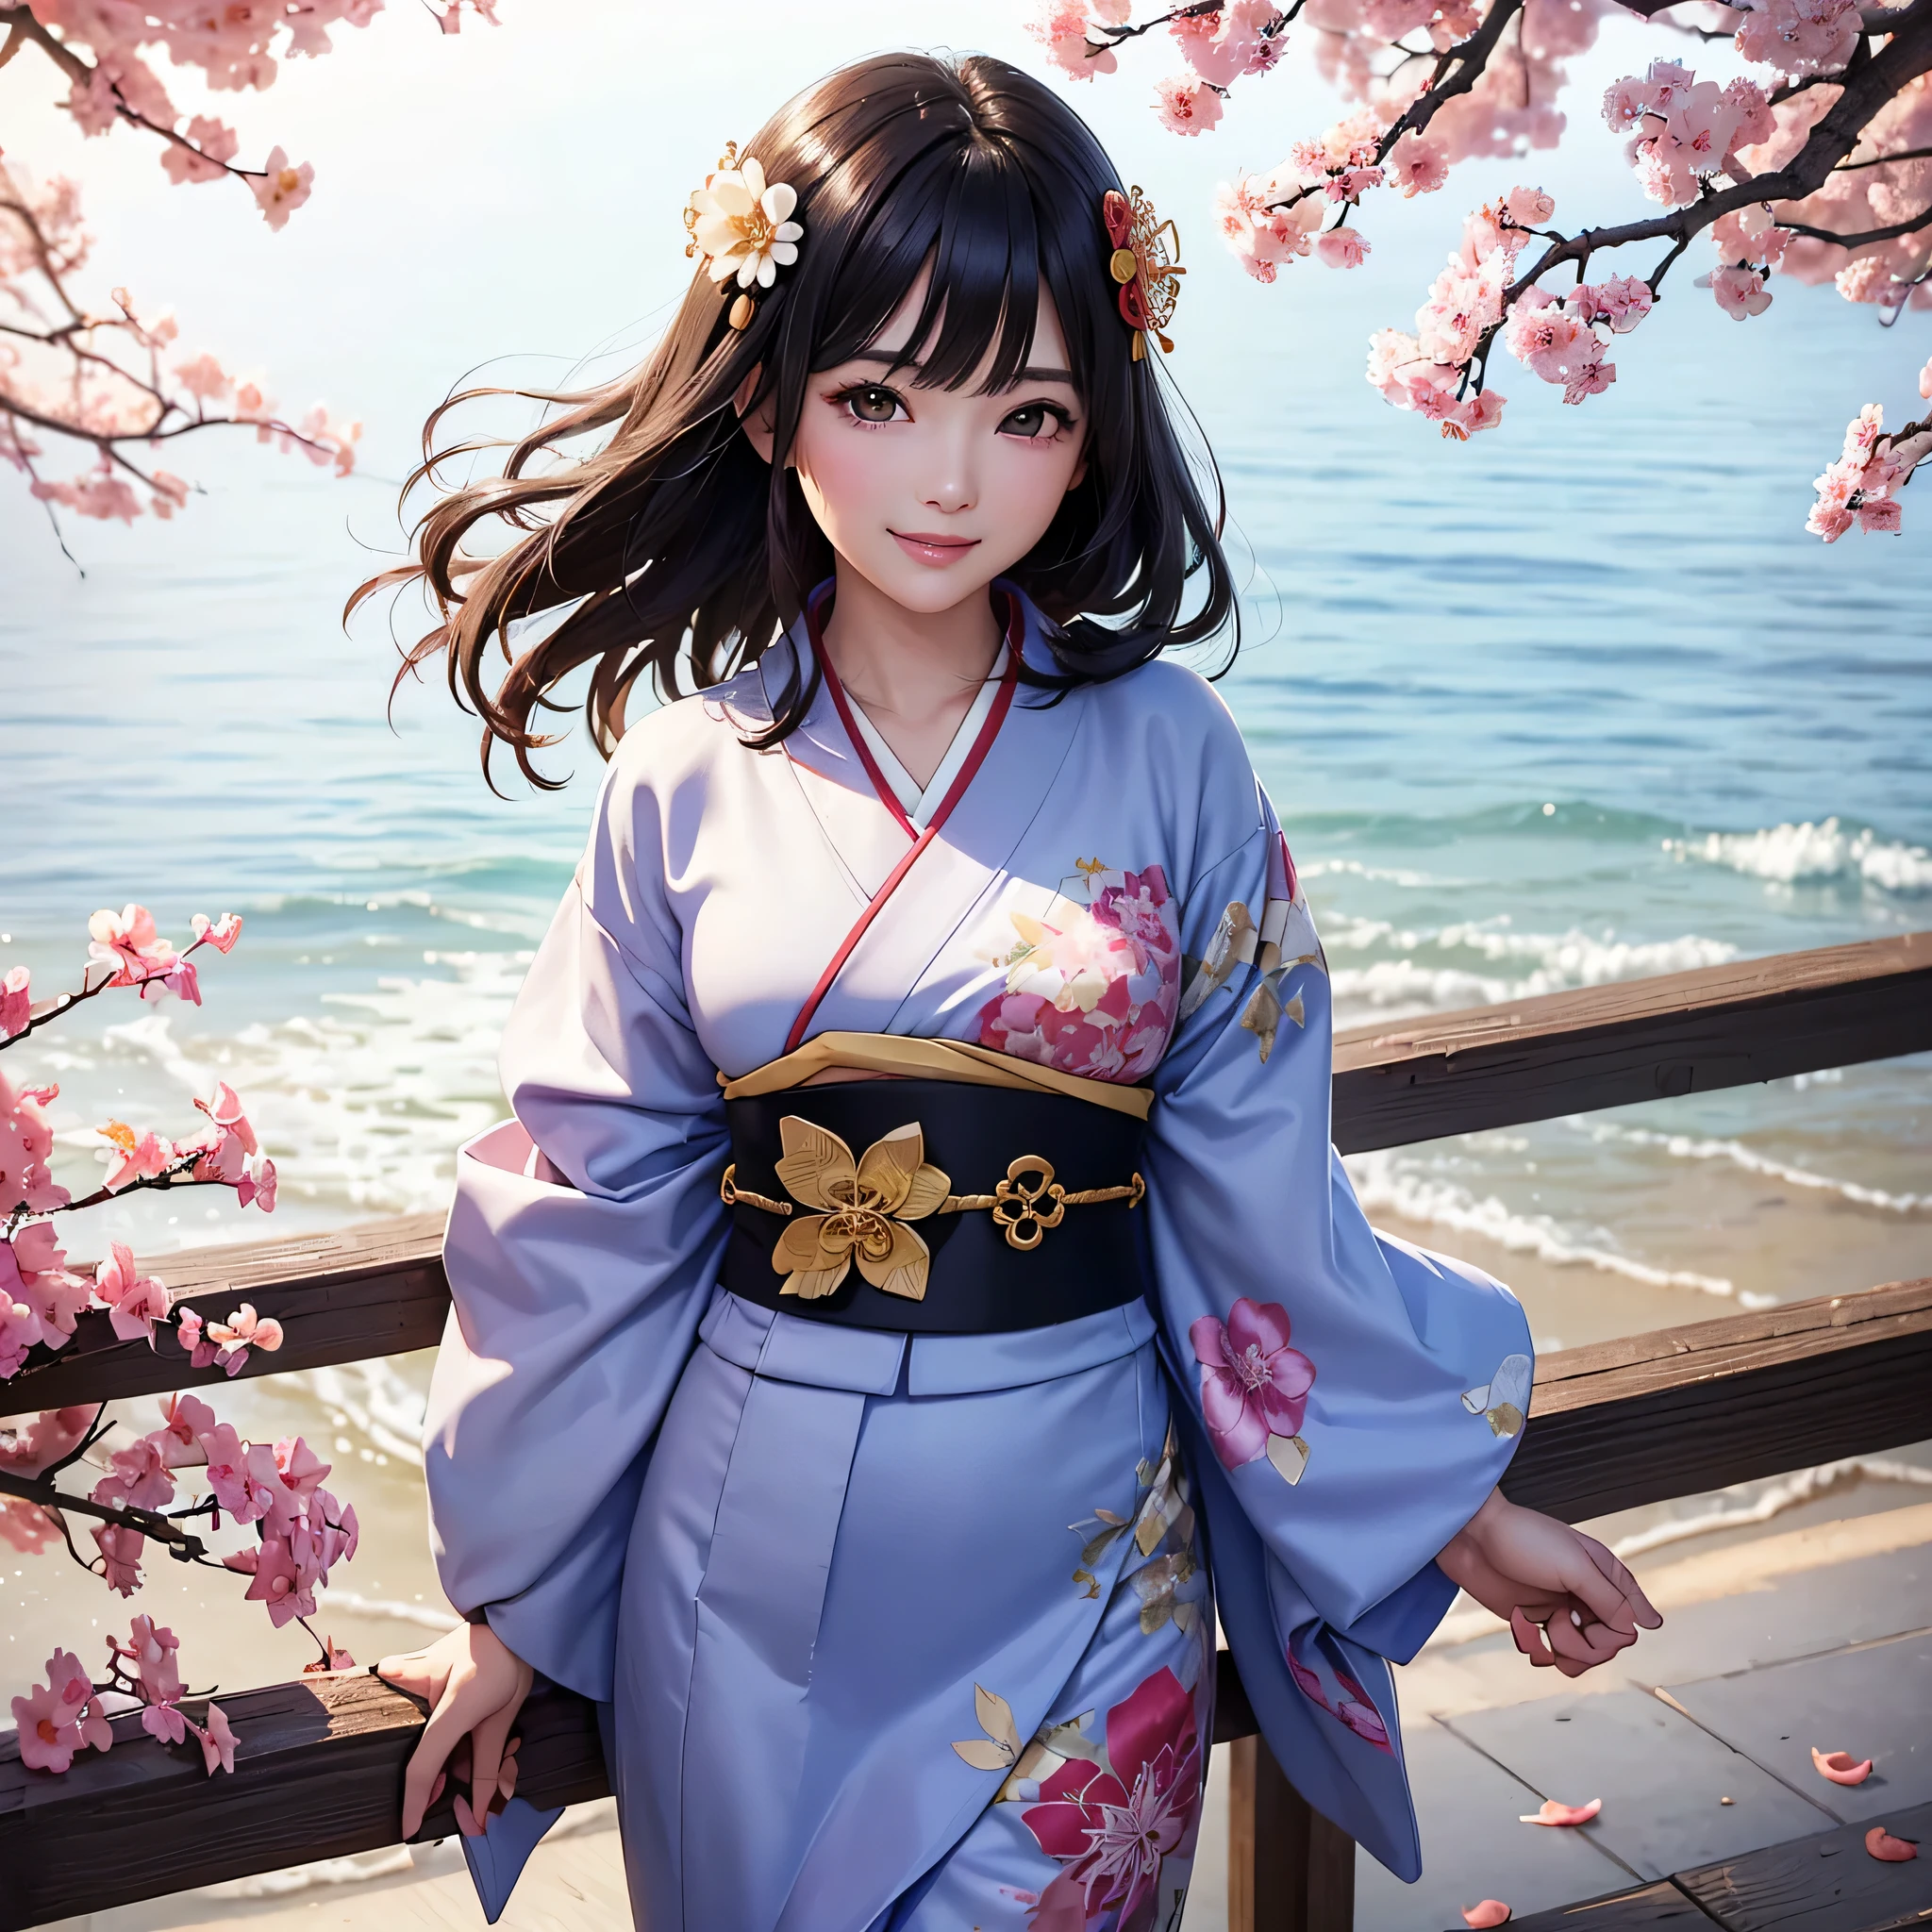 (Super schöne Frau im Kimono)、((höchste Qualität、8k Meisterwerk:1.3))、scharfer Fokus:1.2、(superschönes Gesicht:1.0)、(Glänzende Haut:1.0)、realistische Bilder、schwarzhaarig、Videoschreiben、Hochauflösende Augen und Gesicht、Videoschreiben、japanische Schauspielerin、von vorne、mittlere Brust、mit einem glücklichen Lächeln、einen Kimono tragen、unter den Herbstblättern、hochwertigster Obi